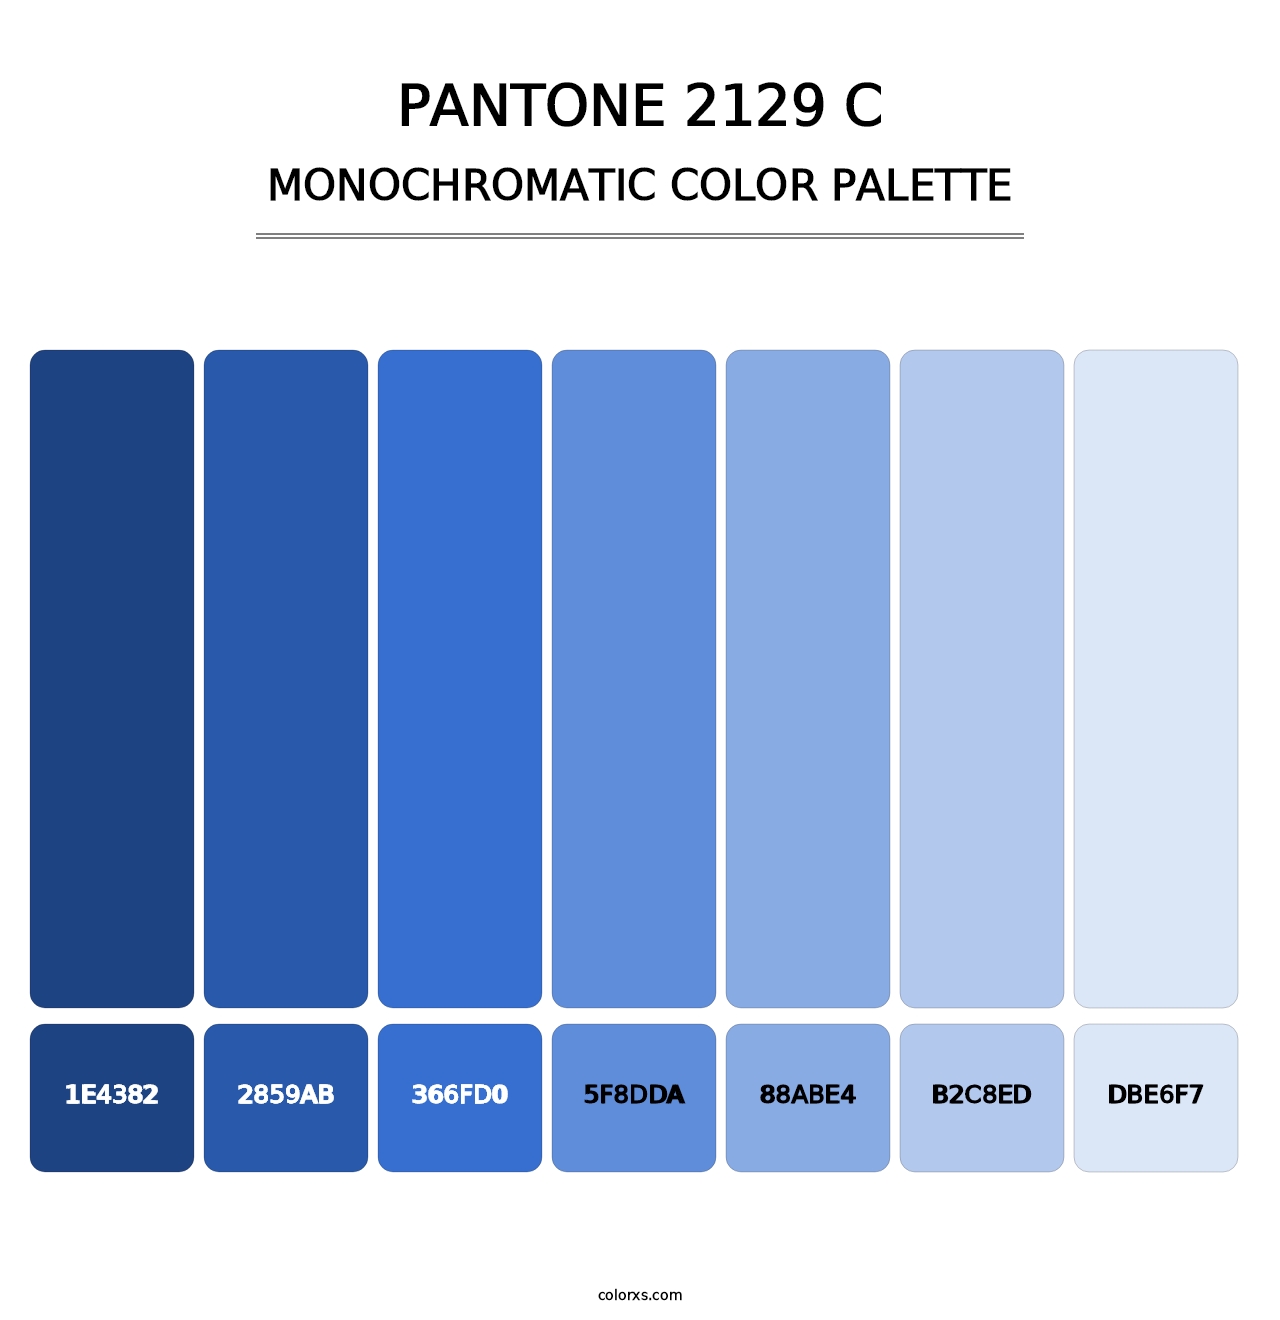 PANTONE 2129 C - Monochromatic Color Palette